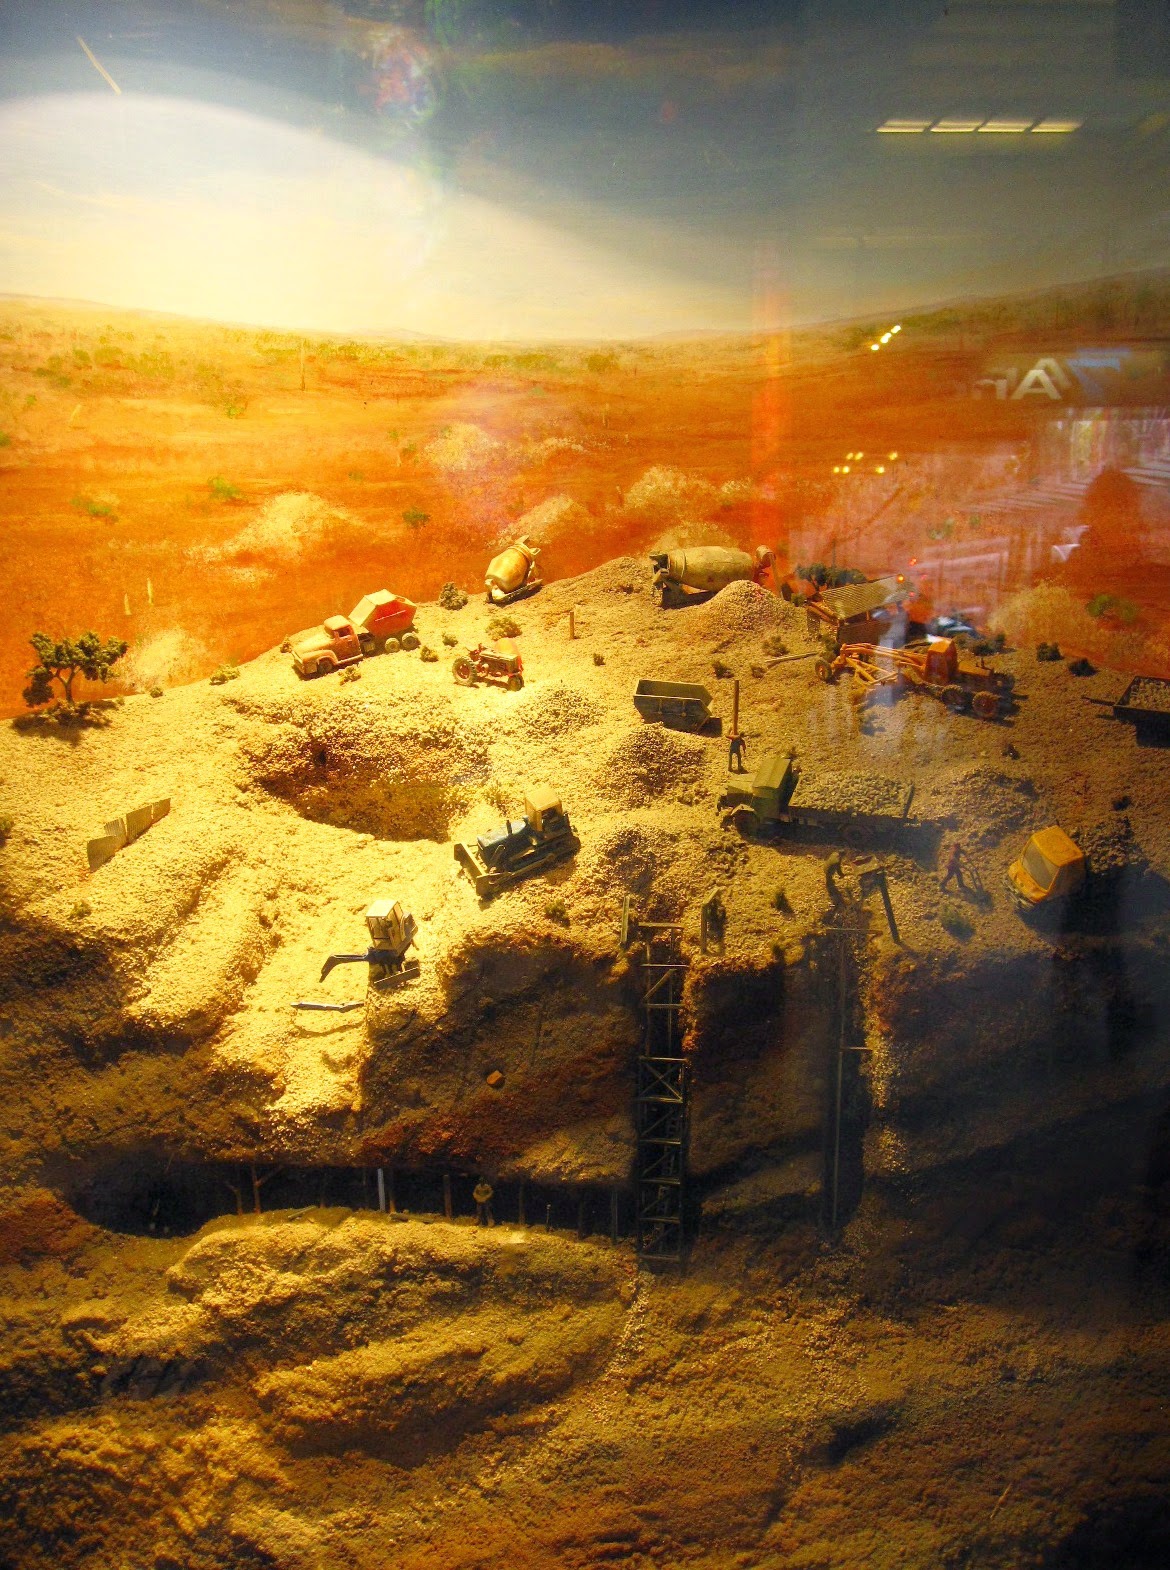 Scale model of an opal mine in a shop window.